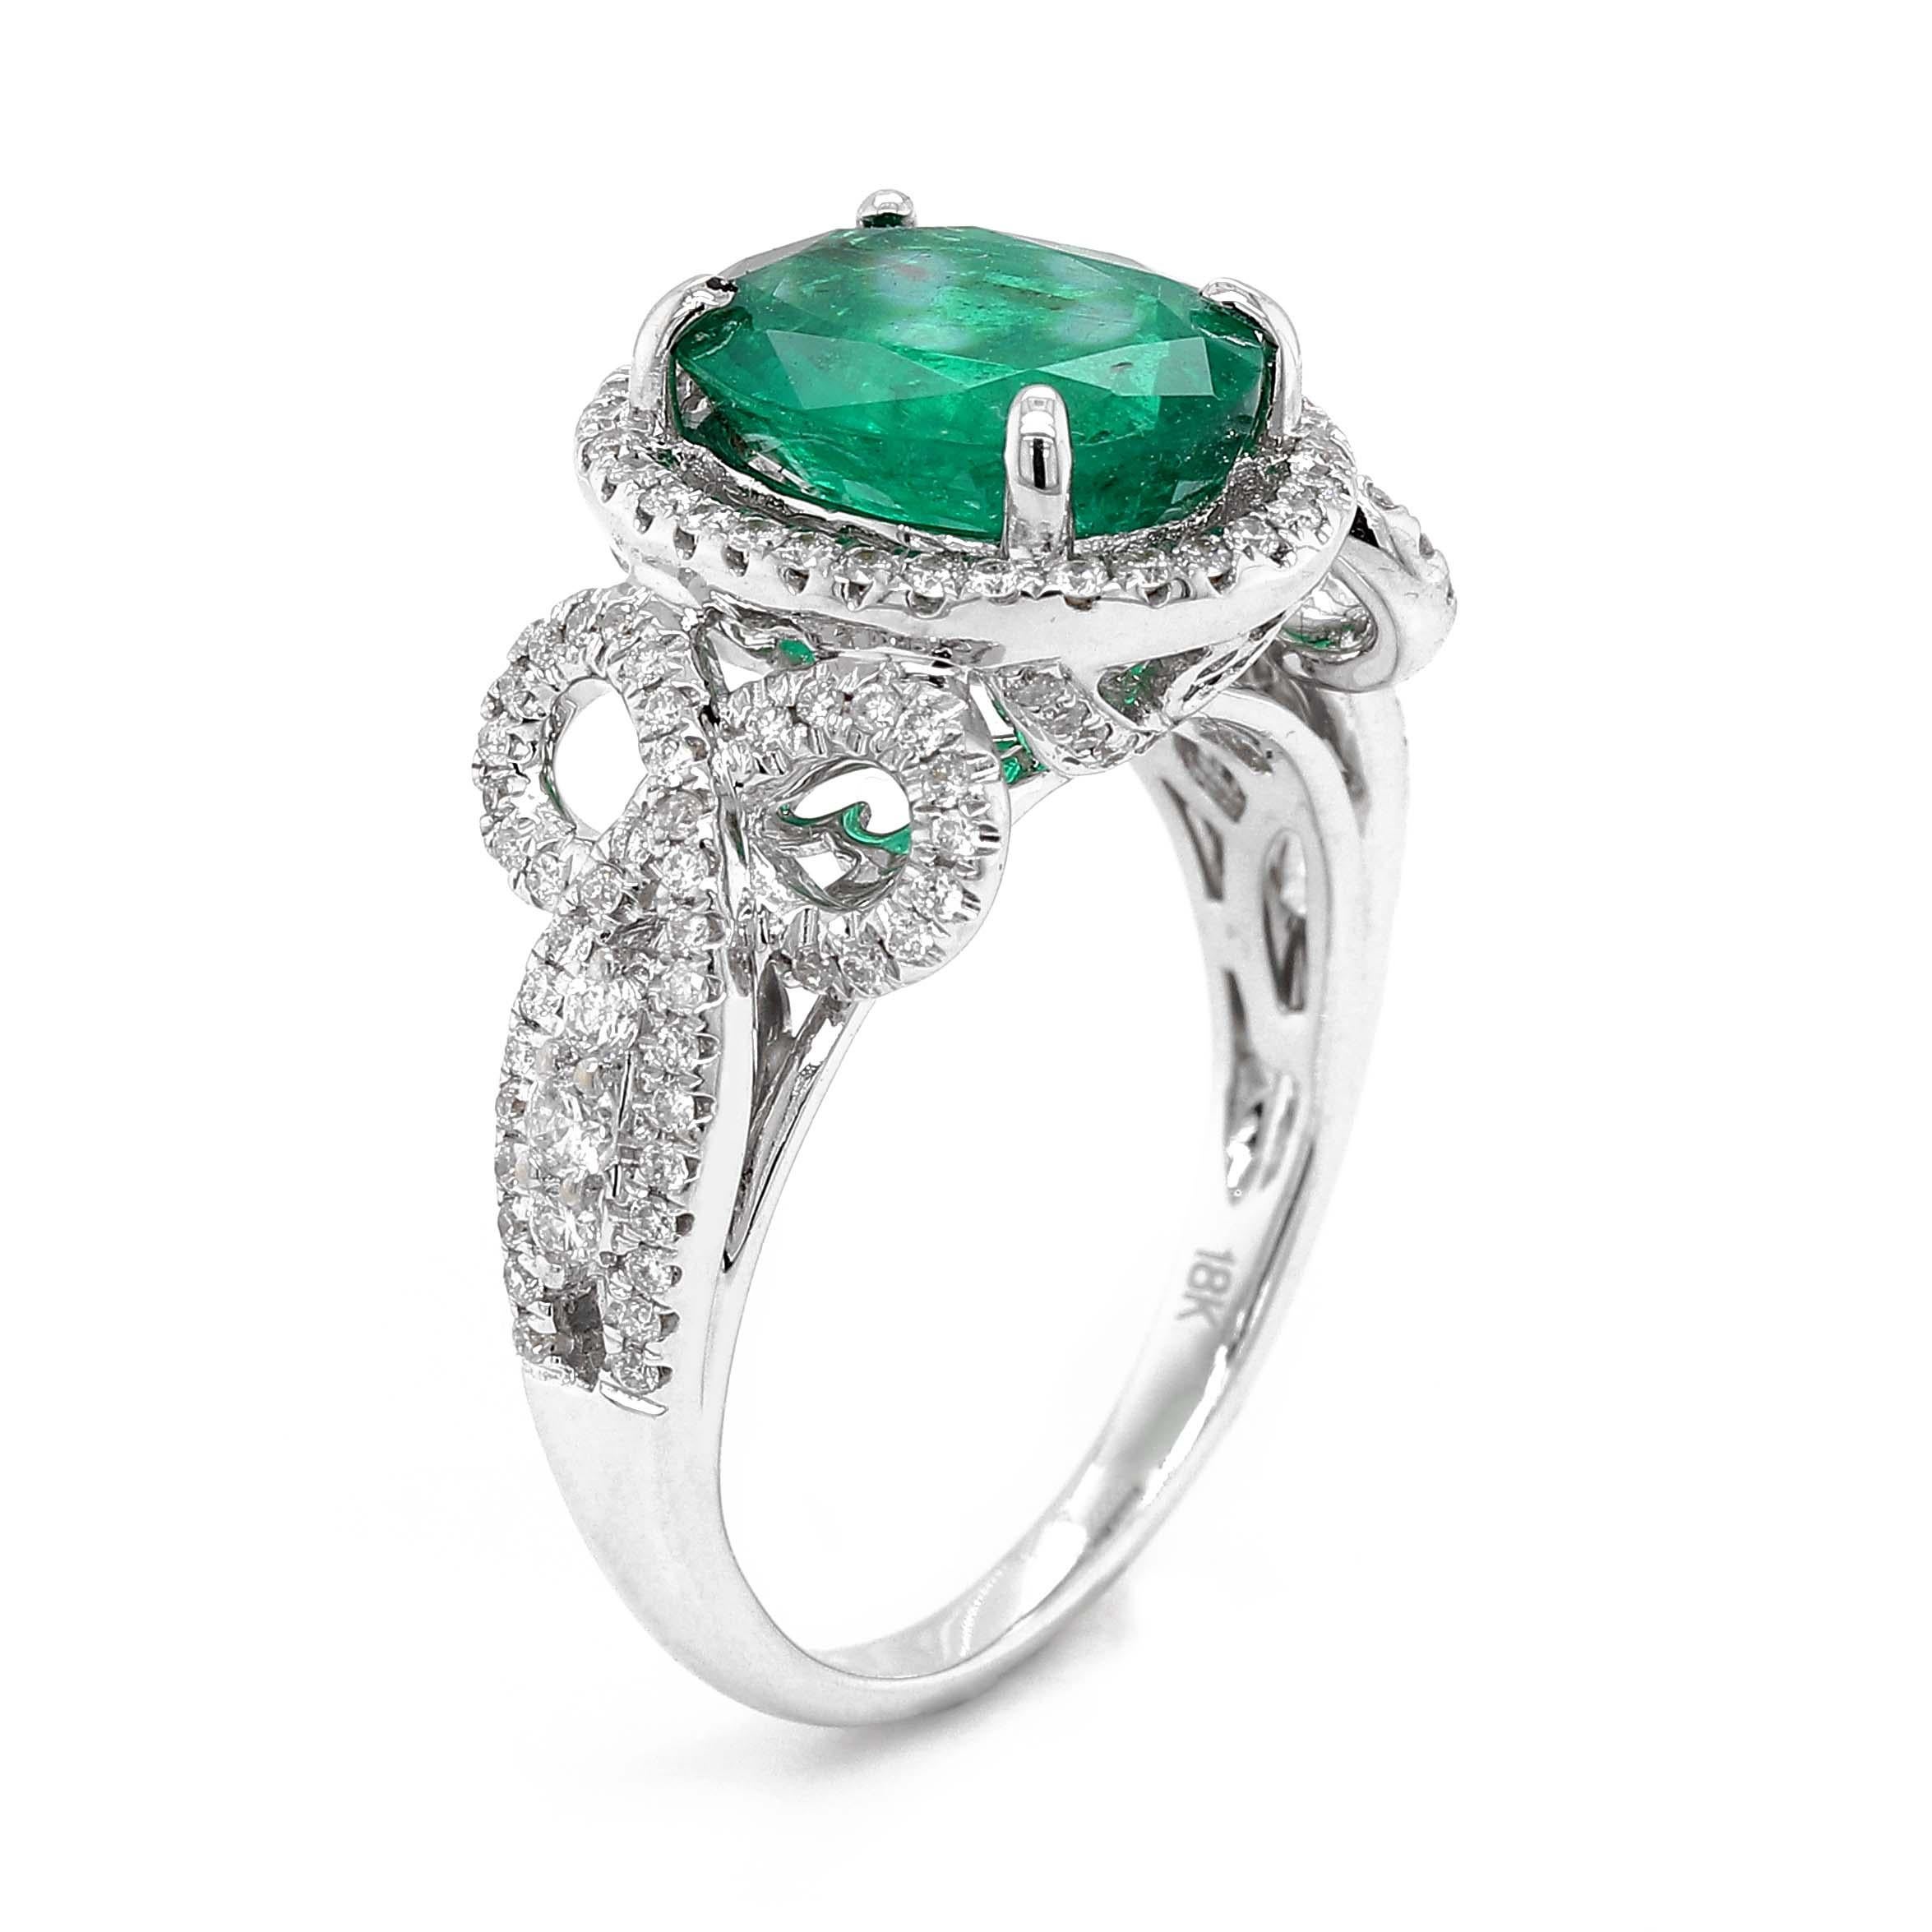 Ring mit einem feinen ovalen Smaragd von ca. 2,42 Karat mit den Maßen 10,22x7,85x4,67 mm. Der Smaragd ist von 140 runden Diamanten im Brillantschliff von etwa 0,51 Karat mit einer Reinheit von SI und Farbe G umgeben. Alle Steine sind in einem Ring